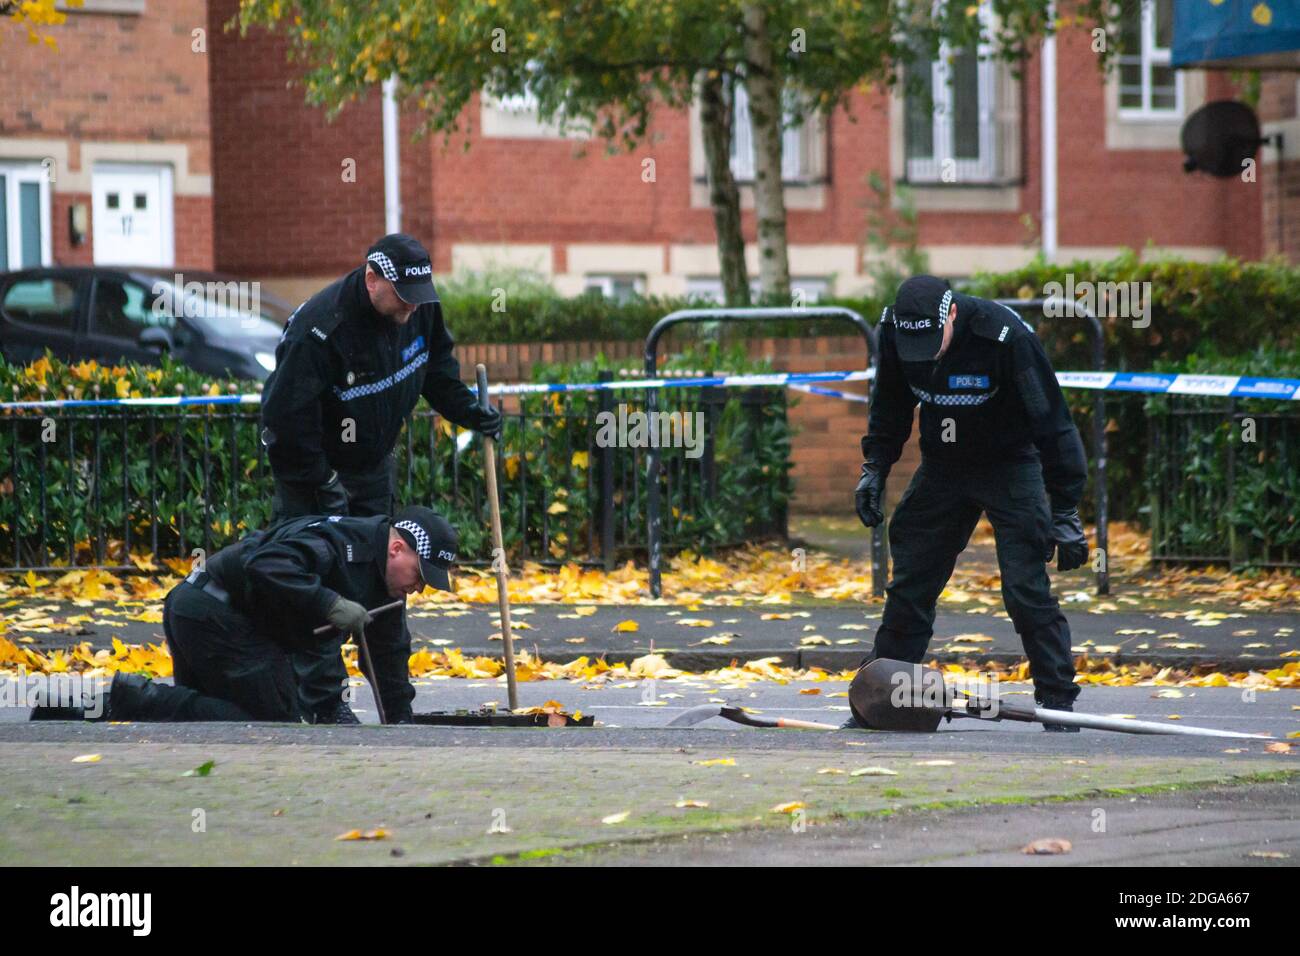 Am 24. Oktober 2020 hörten Anwohner Schüsse auf einer Straße in Winson Green, Birmingham. Die Polizei sperrte die Straße für etwa 12 Stunden ab, während Ermittlungen und Untersuchungen mit Fingerspitzen von spezialisierten Einsatzeinheiten der West Midlands Police durchgeführt wurden Stockfoto